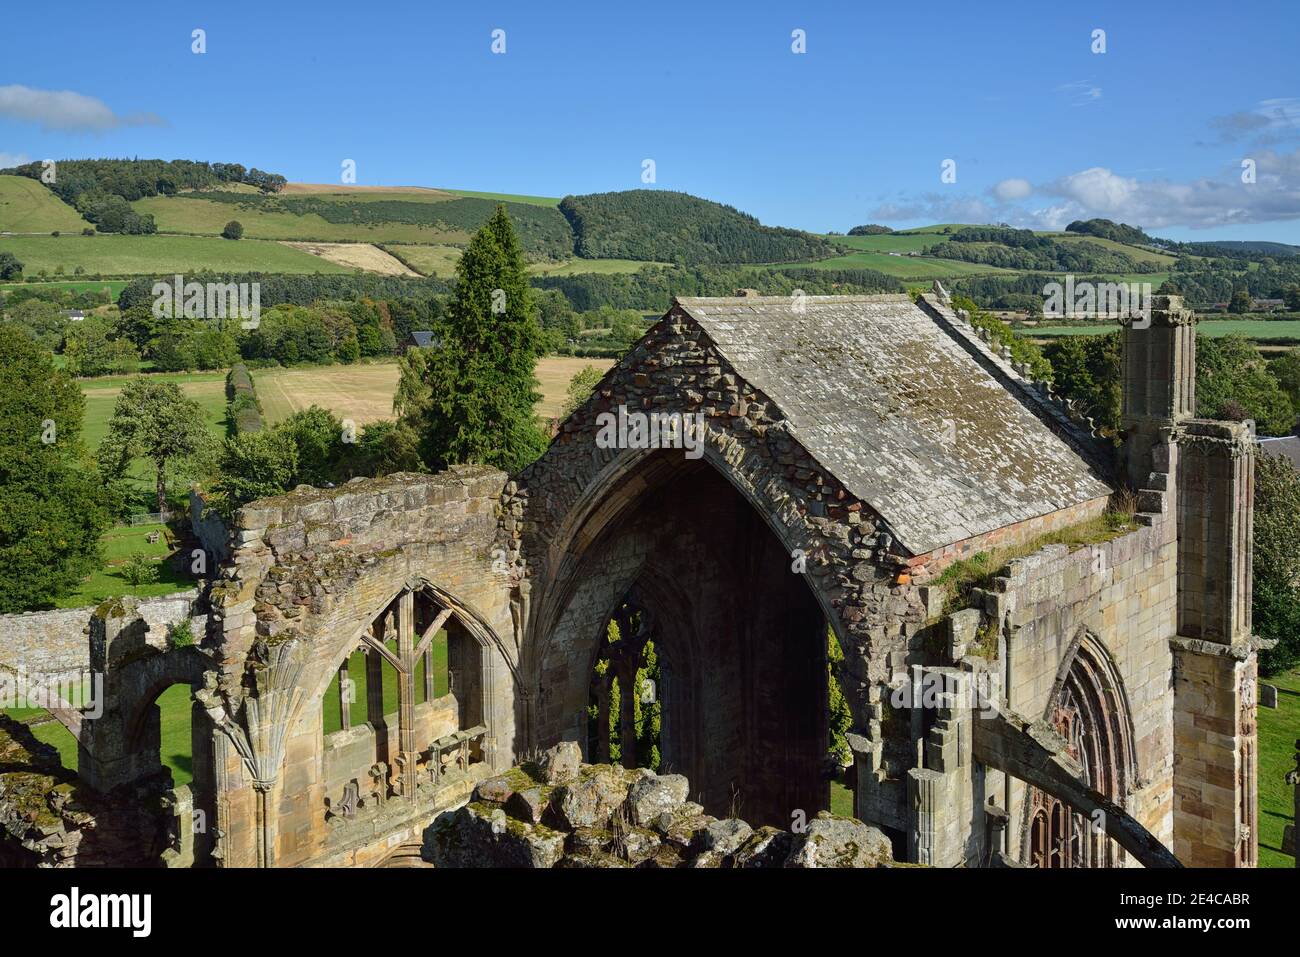 Ruines de la cathédrale d'Elgin, Moray, Écosse, Royaume-Uni, Europe, Elgin, Moray, Écosse, Royaume-Uni, îles britanniques Banque D'Images